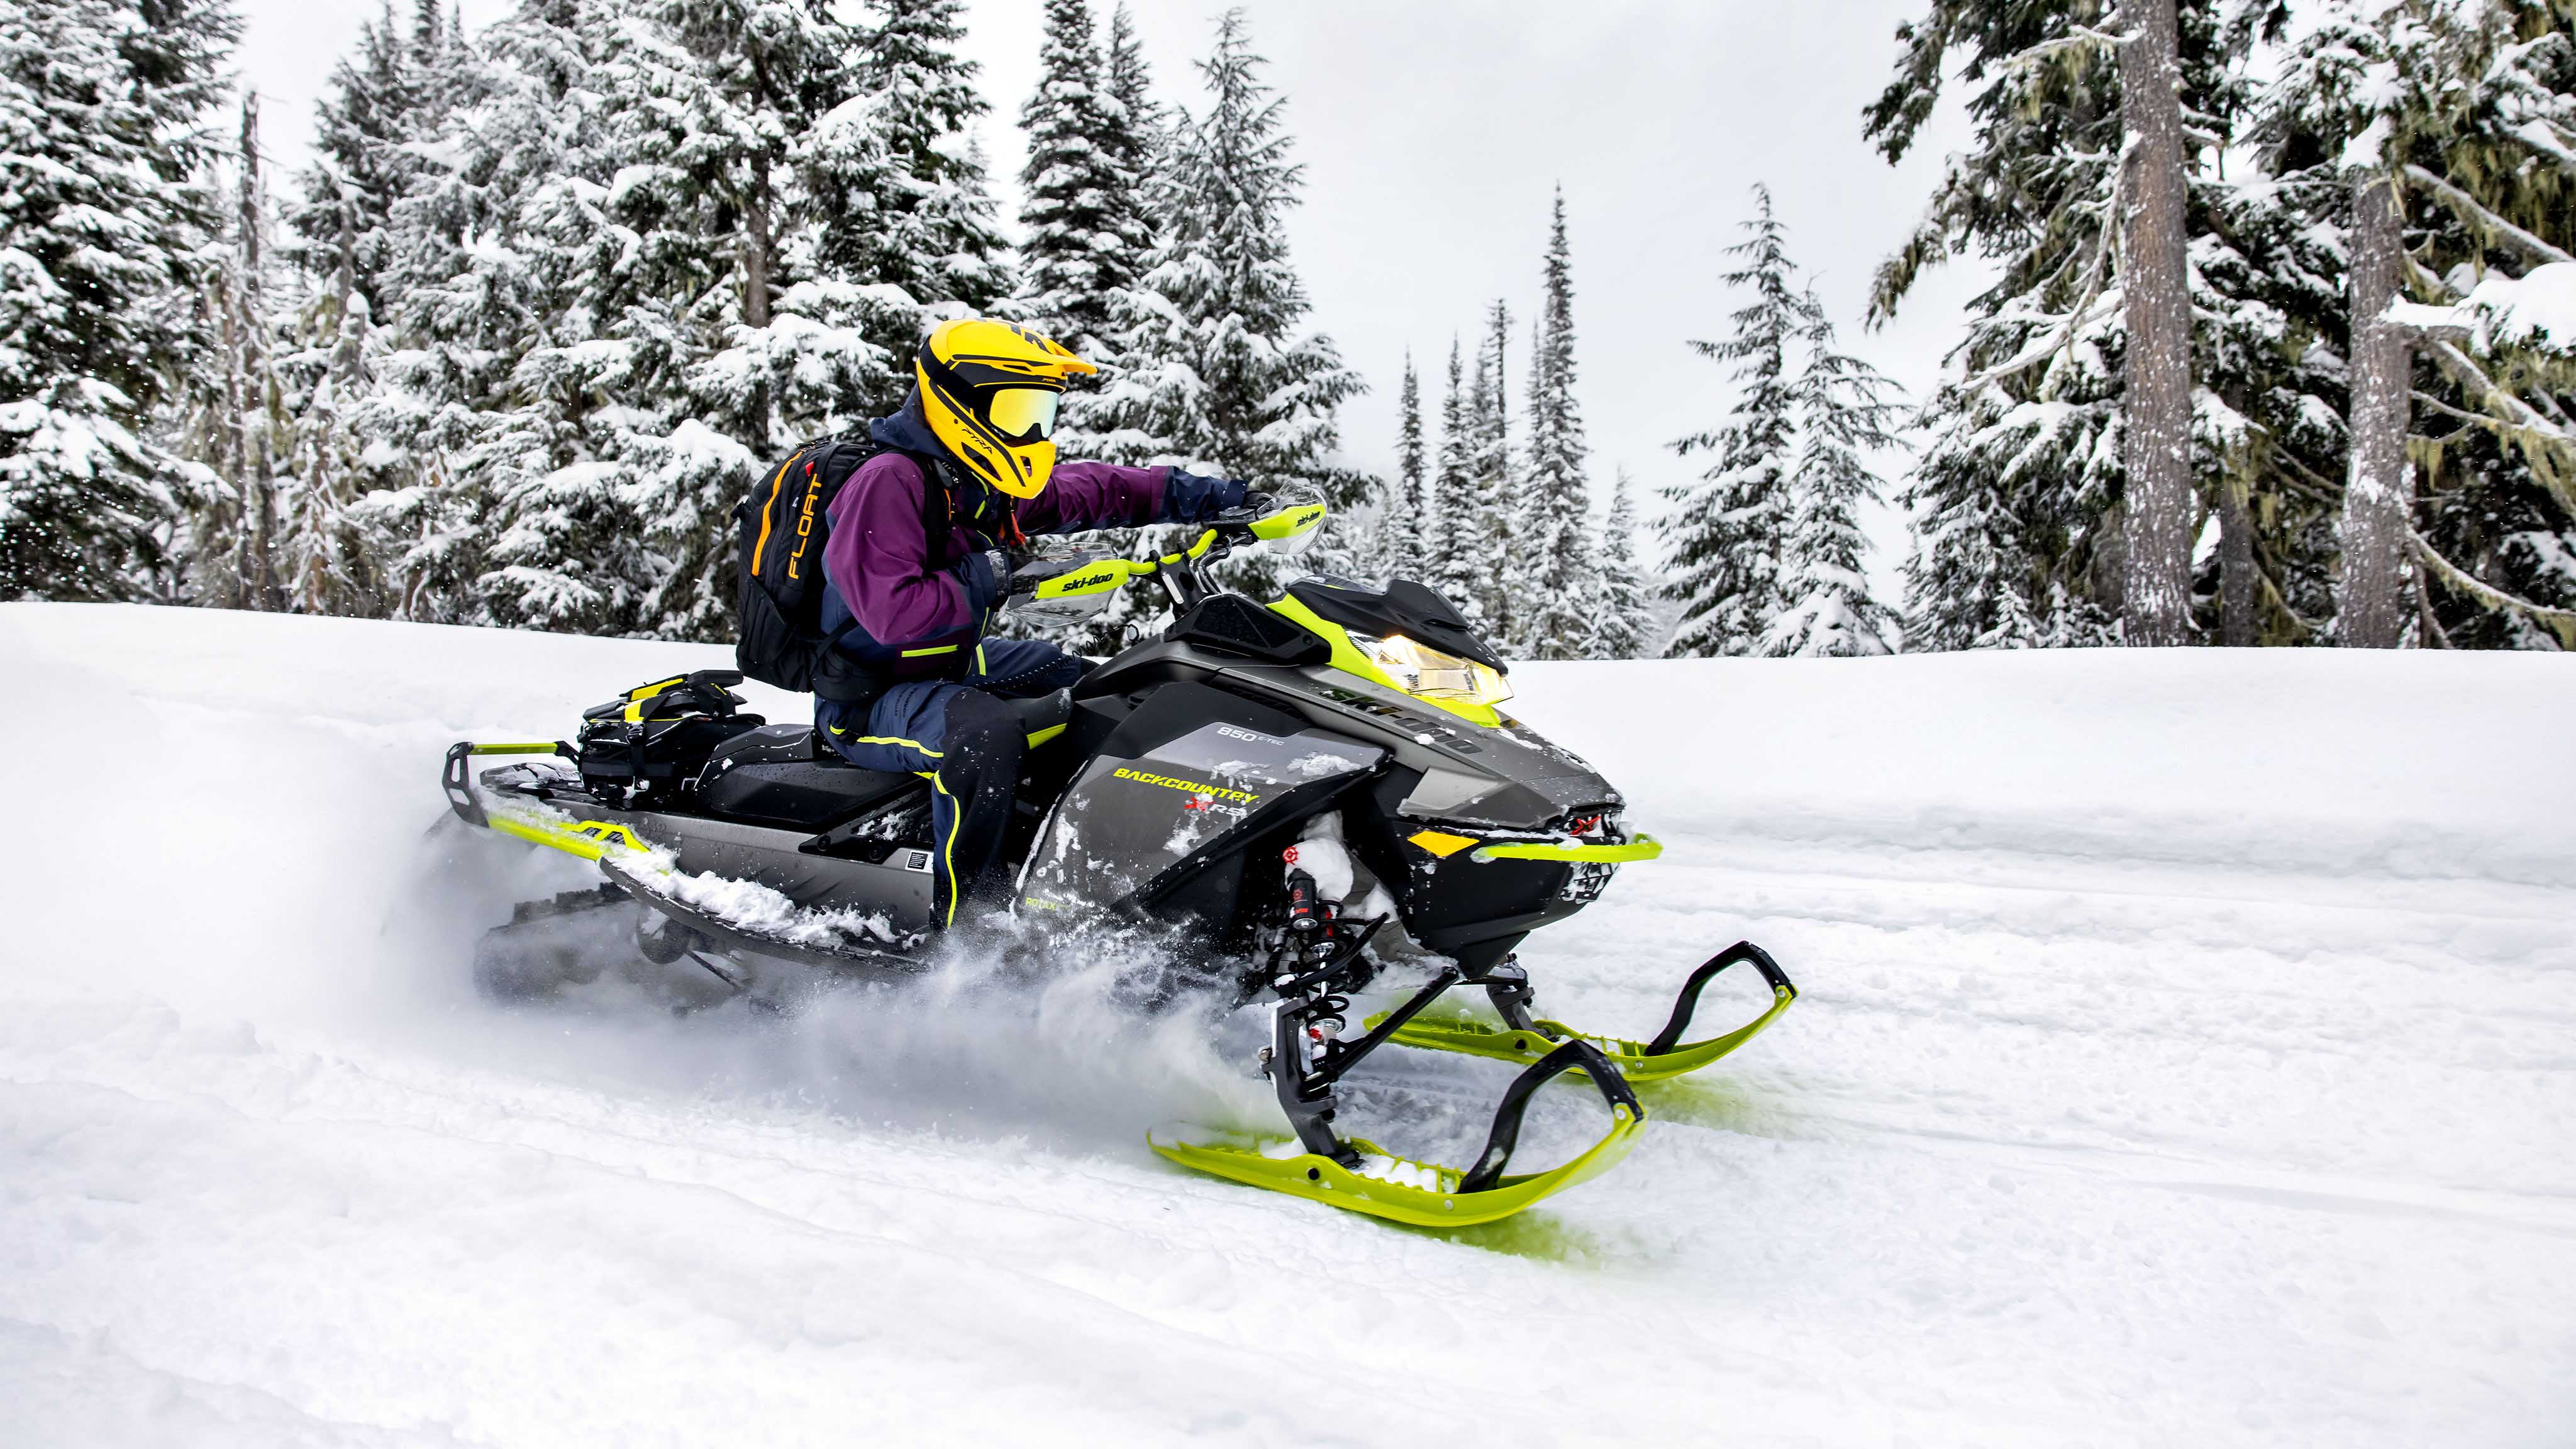 2023 Ski-Doo Motorne Sanjke Snowmobile Snow Sled BRP Ski&Sea Backcountry